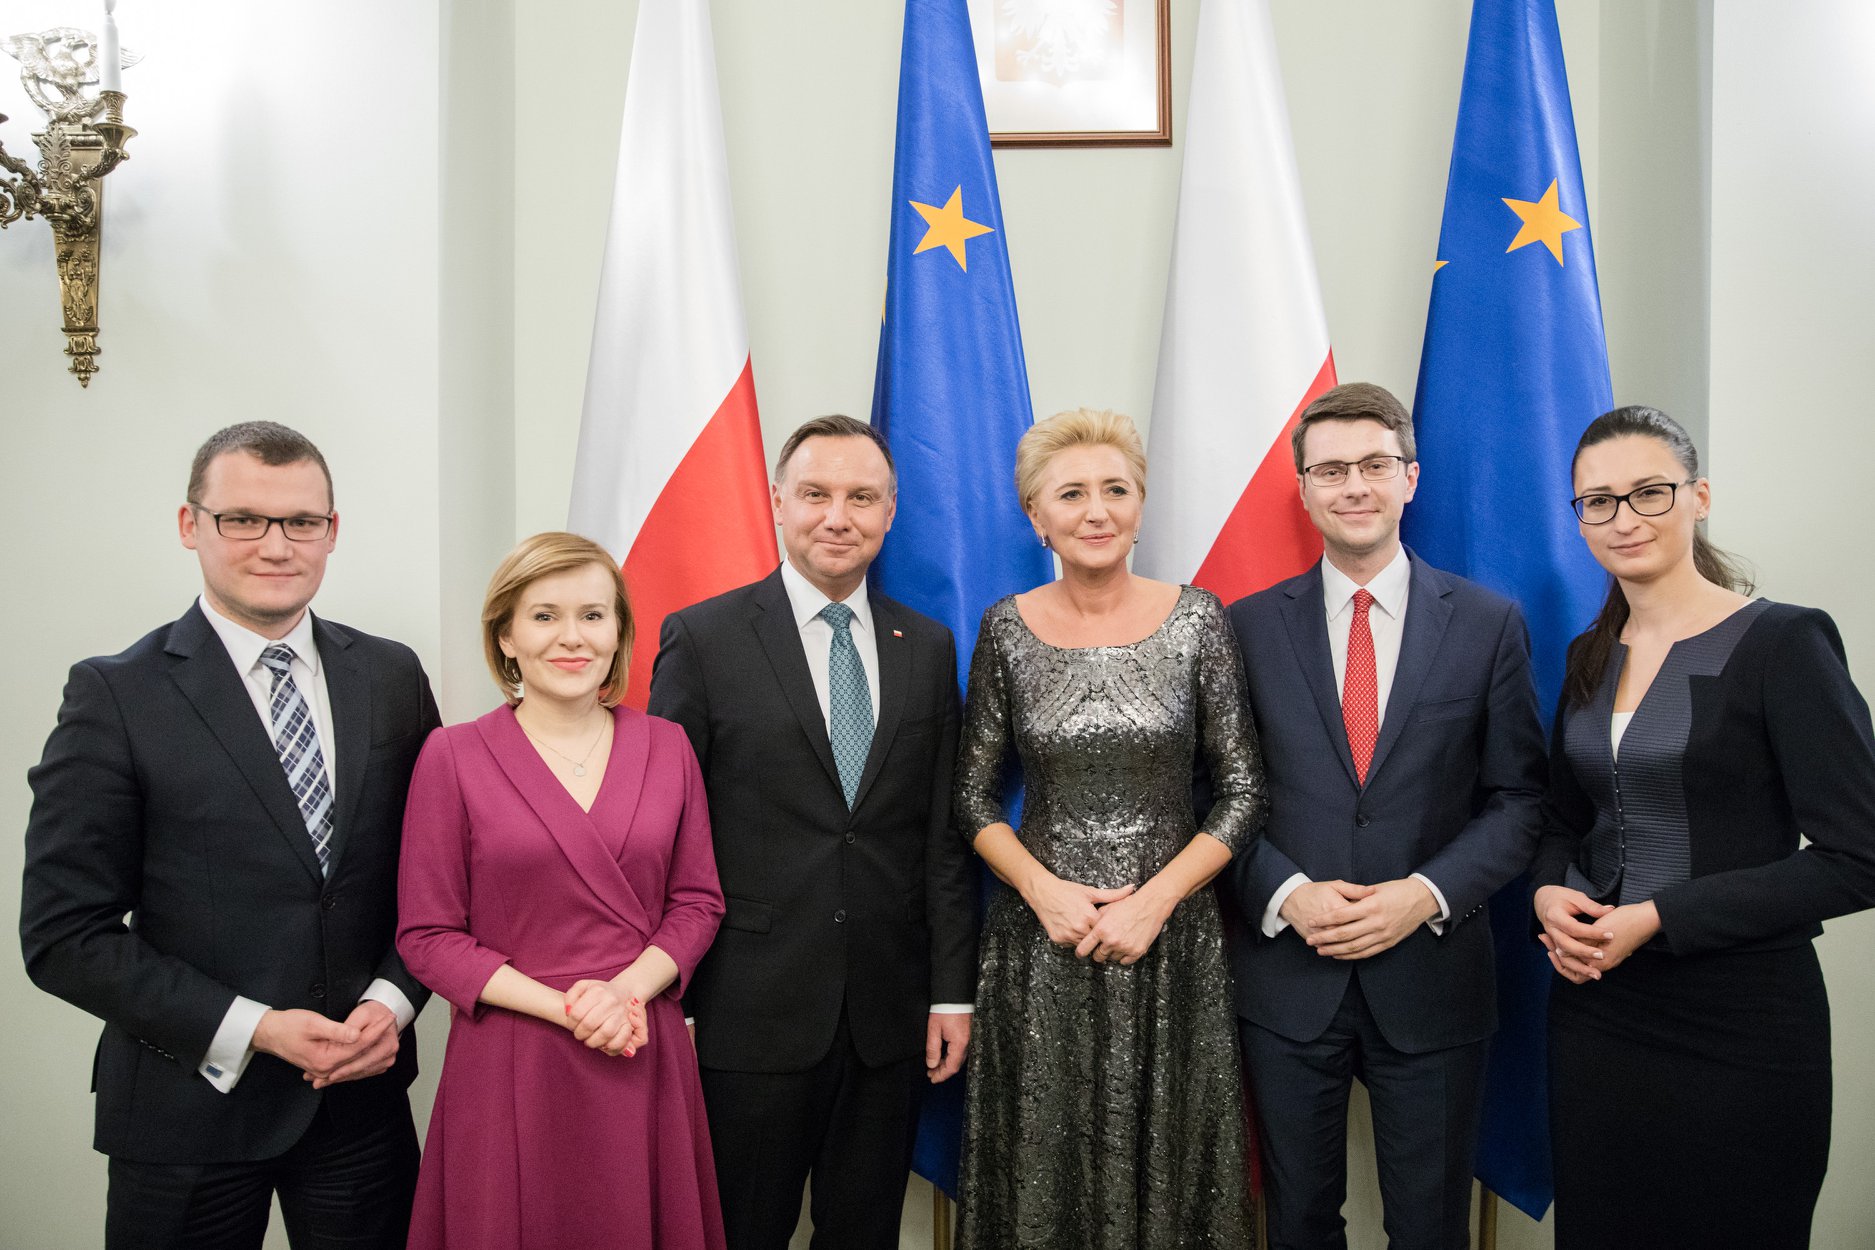 W środę w Pałacu Prezydenckim odbyło się uroczyste spotkanie zorganizowane przez Prezydenta Andrzeja Dudę oraz Pierwszą Damę Agatę Kornhauser-Dudę.